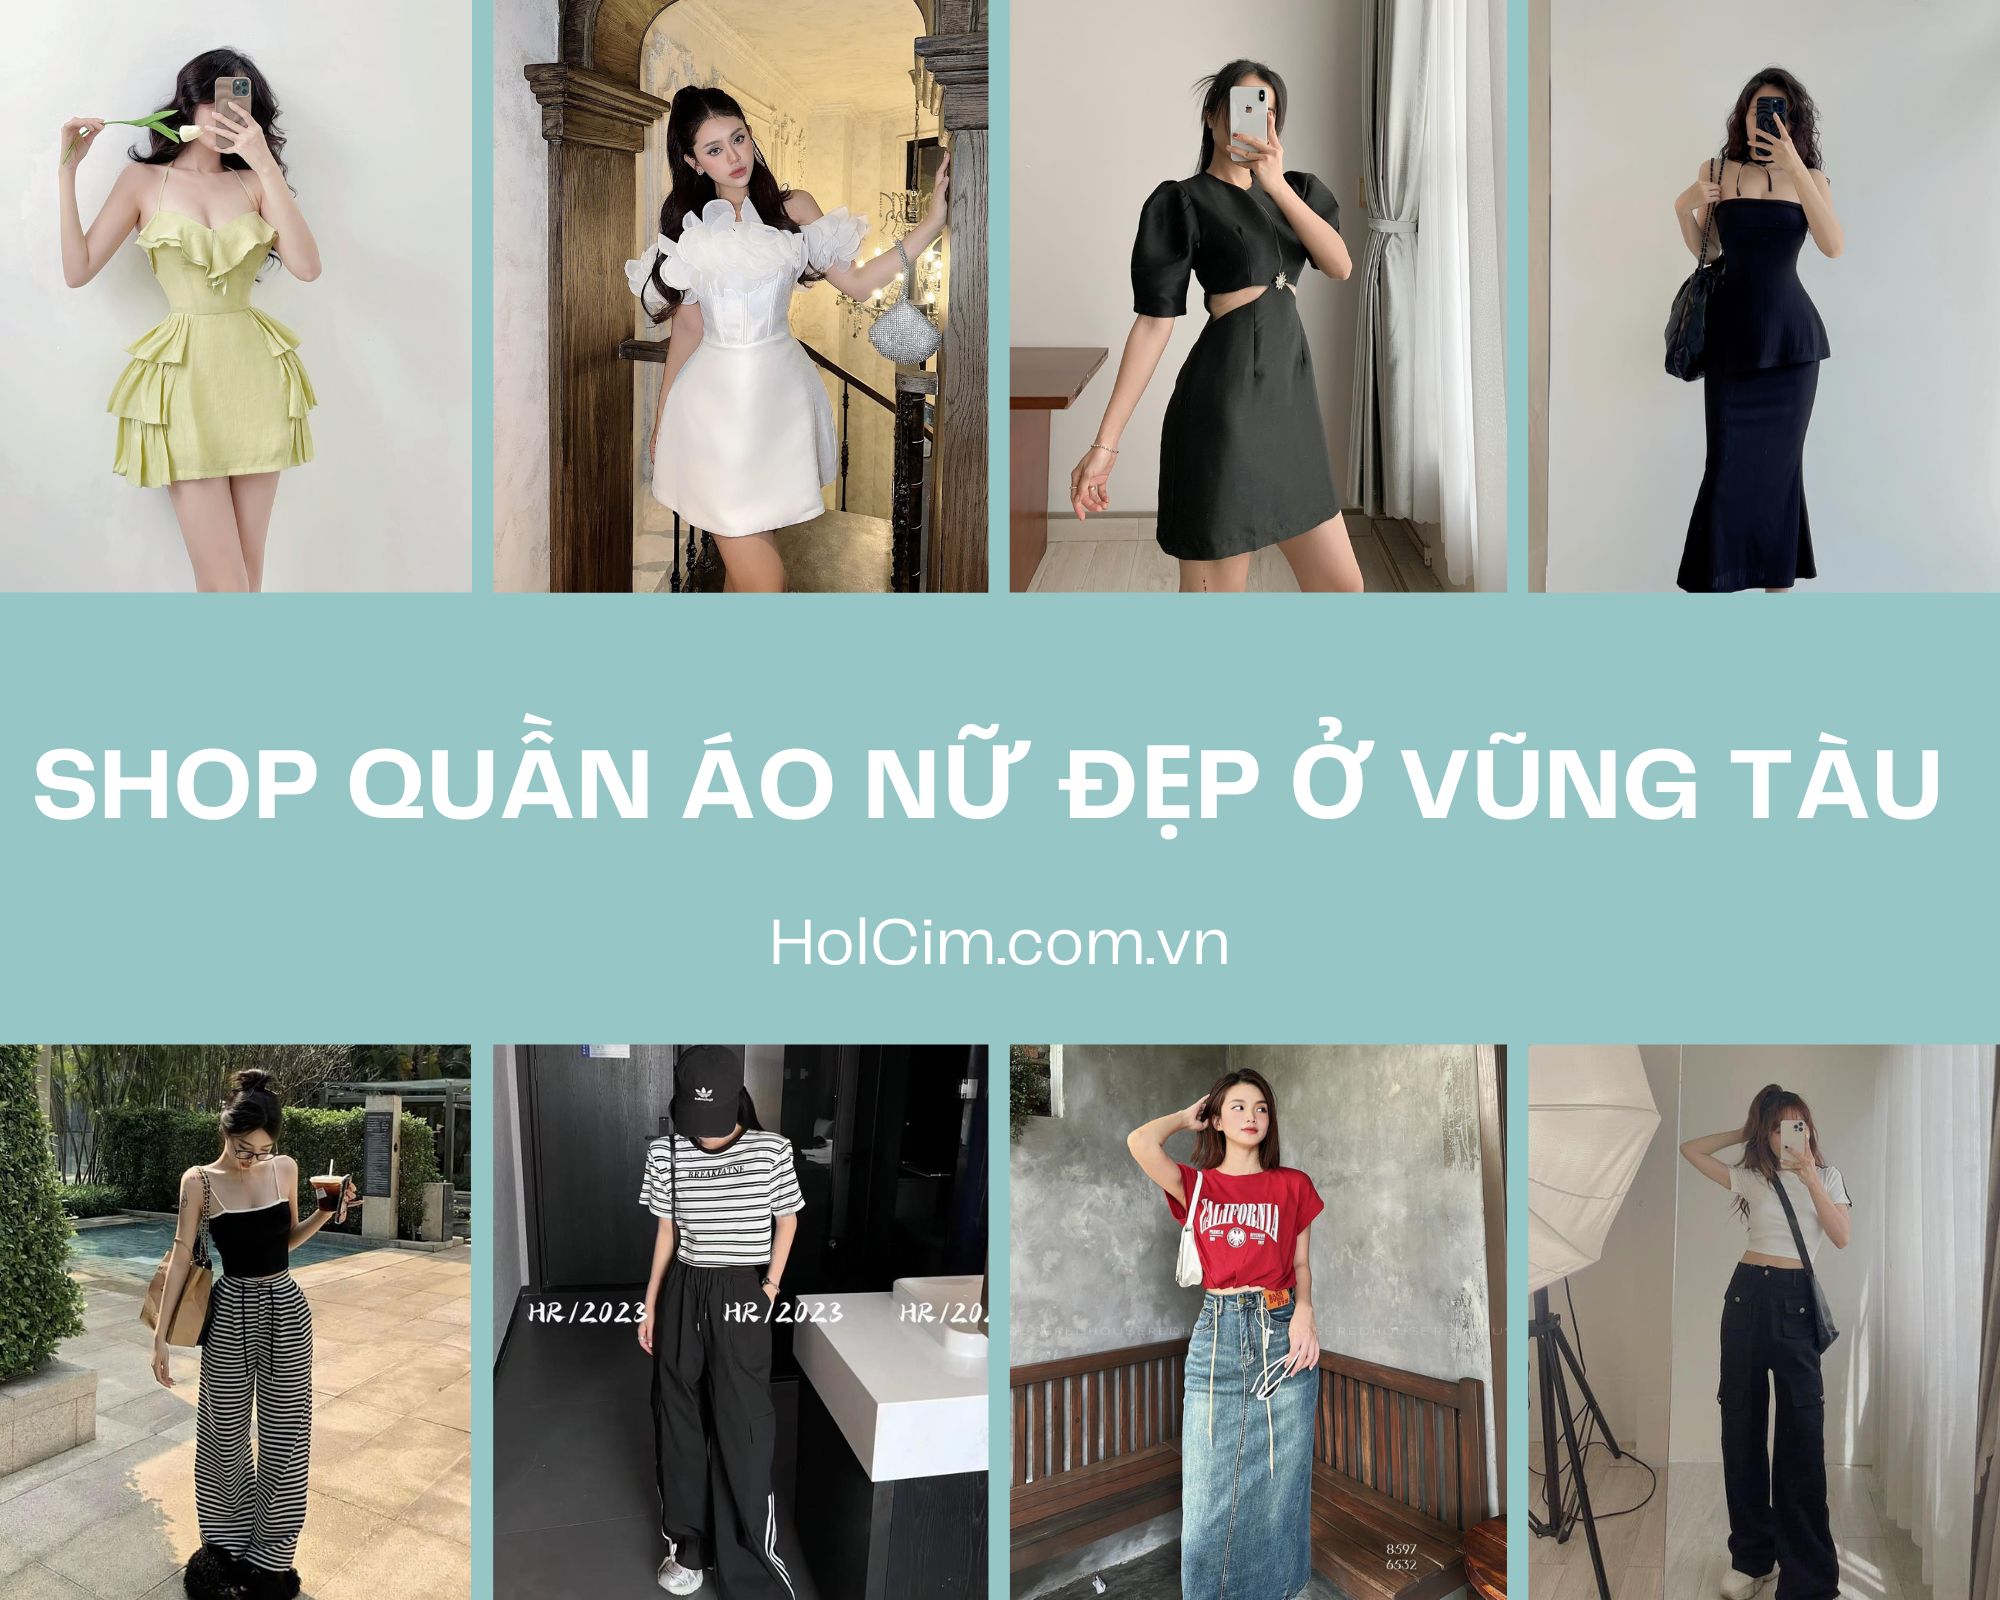 Top 10 shop quần áo nữ đẹp nhất ở Vũng Tàu mà bạn nên ghé qua!